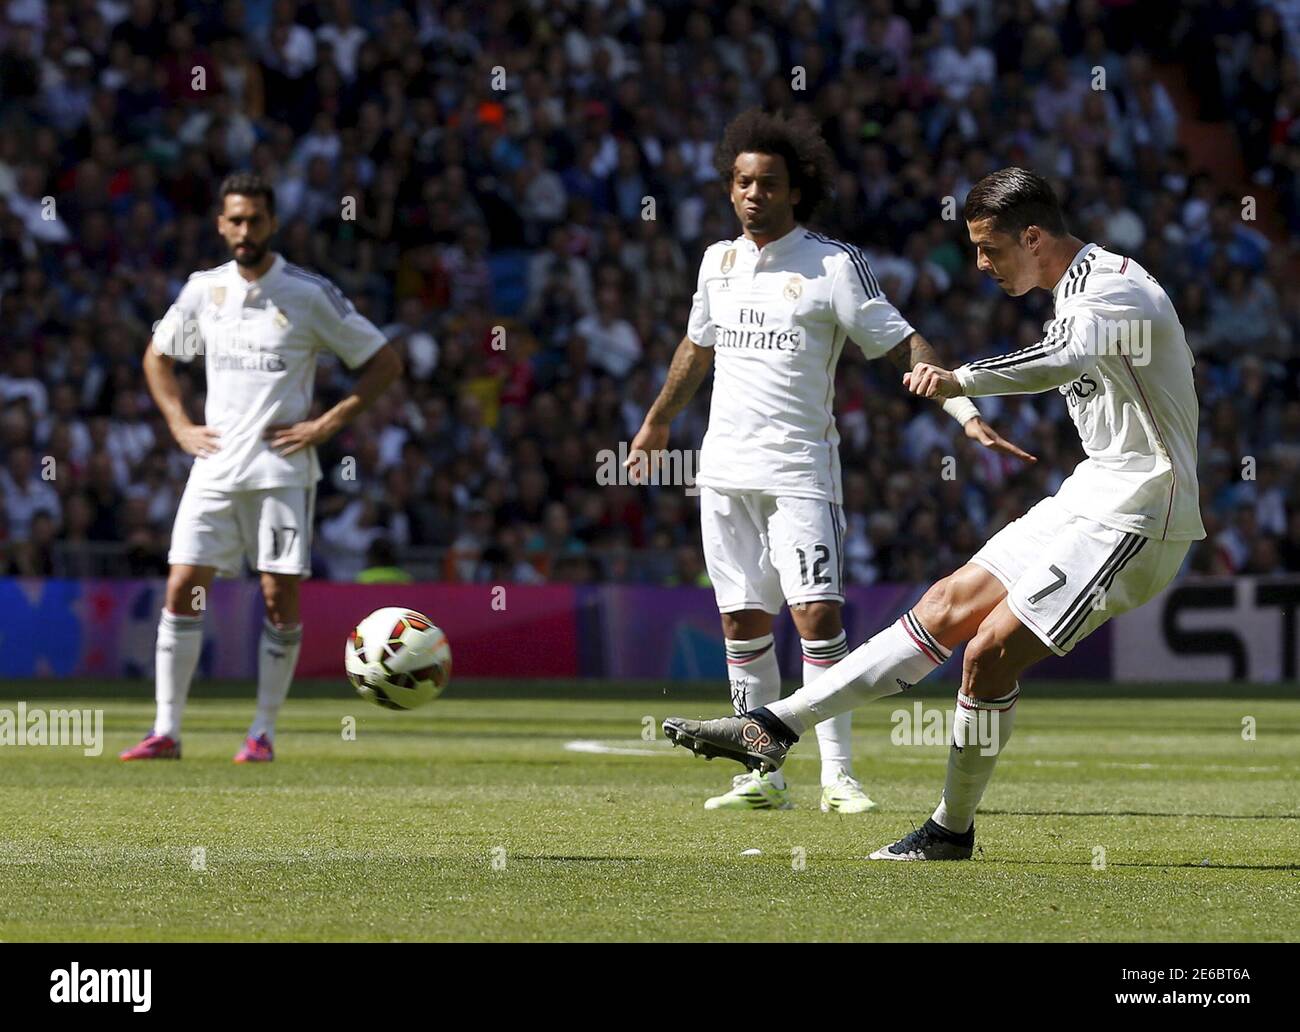 Cristiano Ronaldo del Real Madrid patea el balón para marcar un gol contra  Eibar durante su partido de fútbol de primera división en el estadio  Santiago Bernabeu de Madrid el 11 de